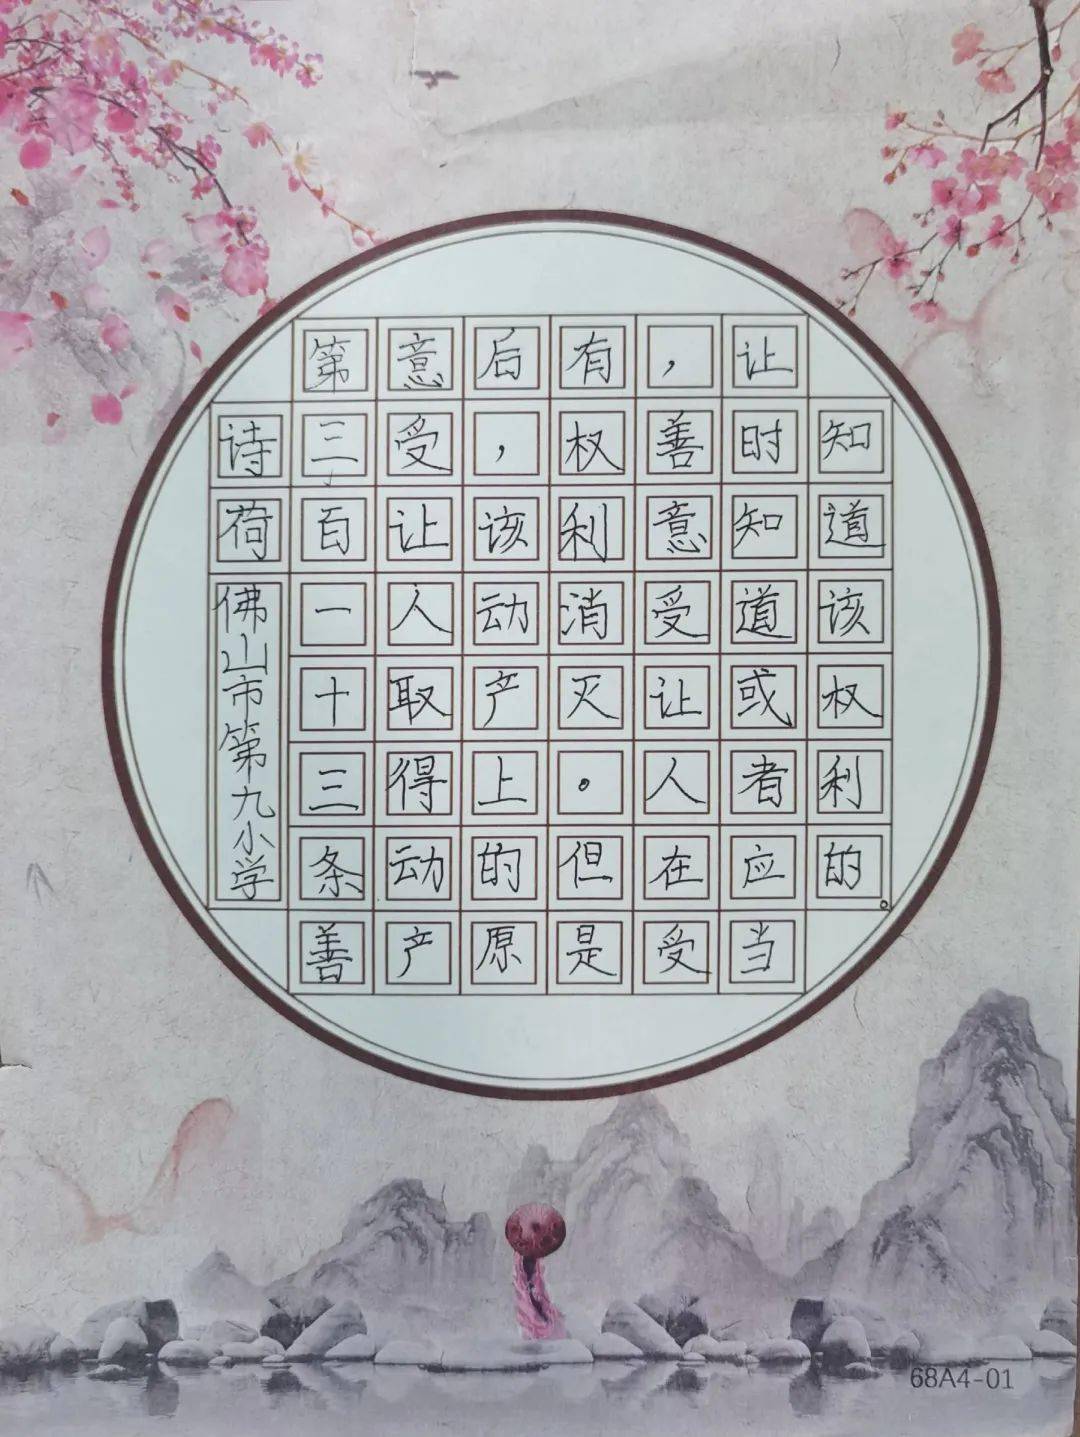 民法典佛山九小师生书写《民法典》的部分作品书法是中华民族传统